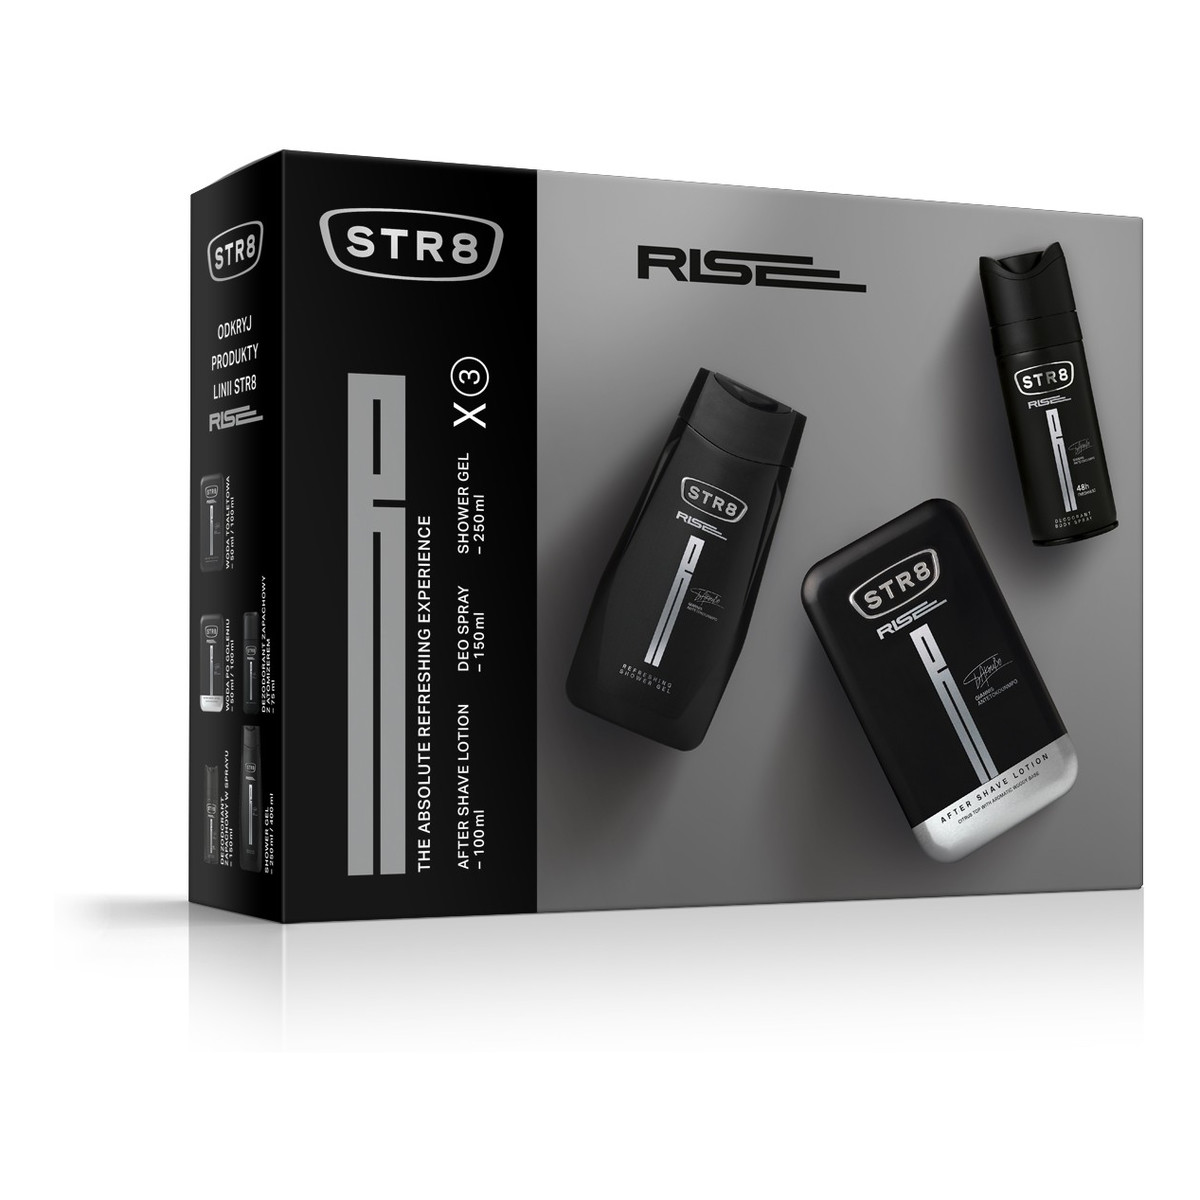 STR8 Rise Zestaw prezentowy (dezodorant spray 150ml+żel pod prysznic 250ml+płyn po goleniu 100ml) 500ml